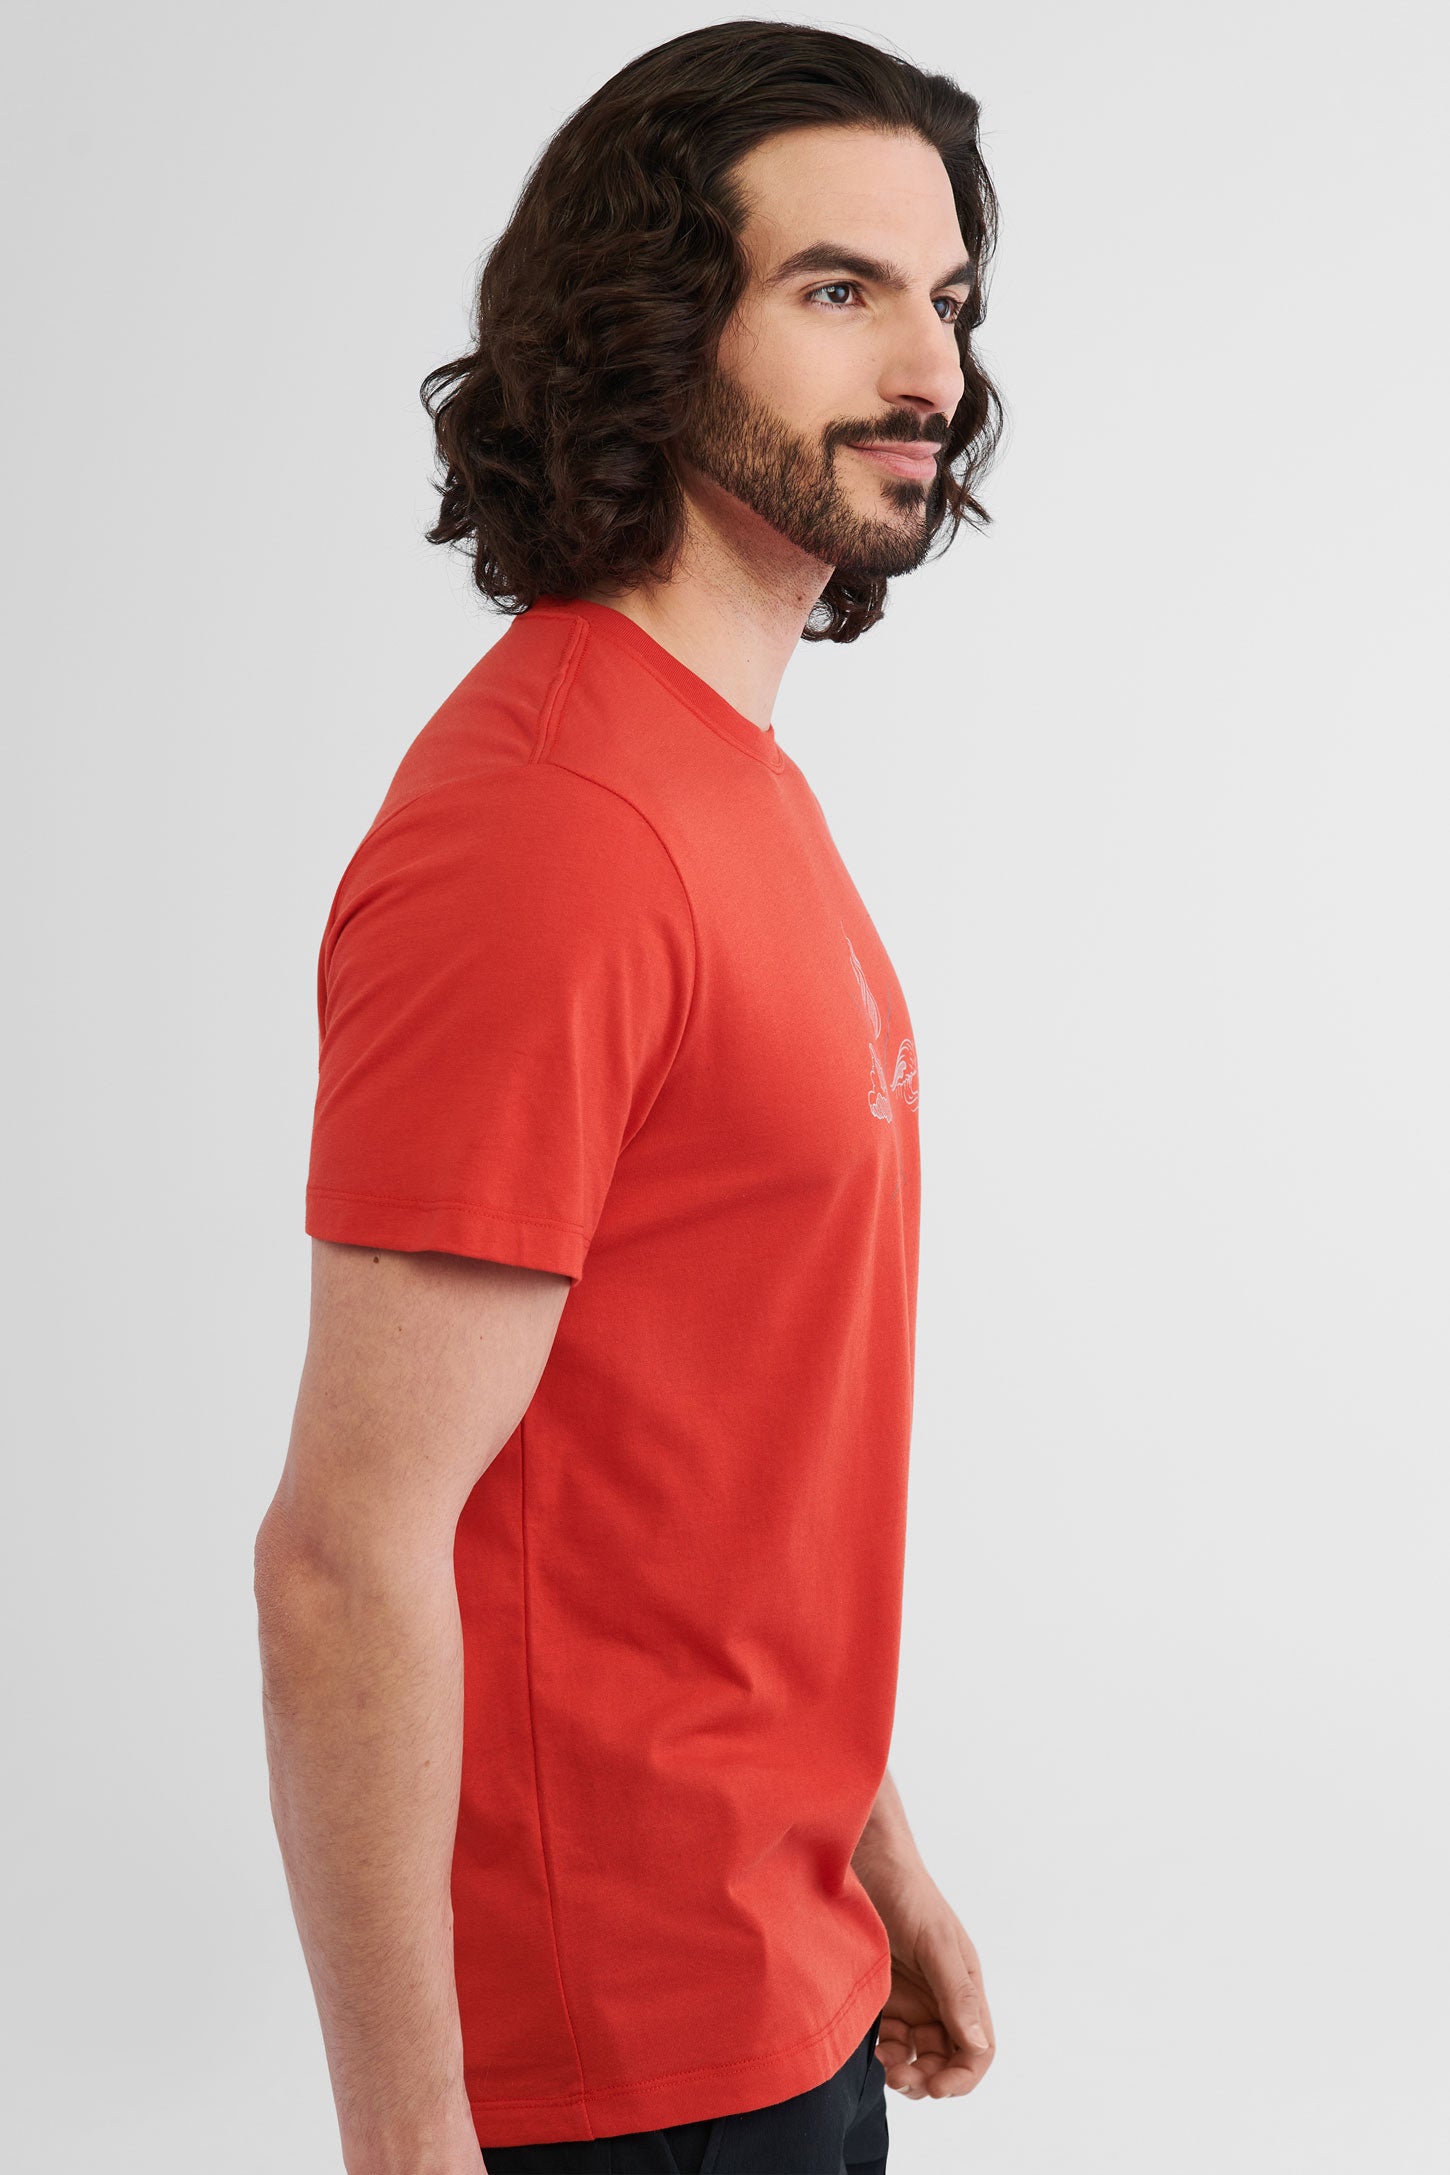 T-shirt polyester recyclé et coton bio BM, 2/50$ - Homme && ROUGE